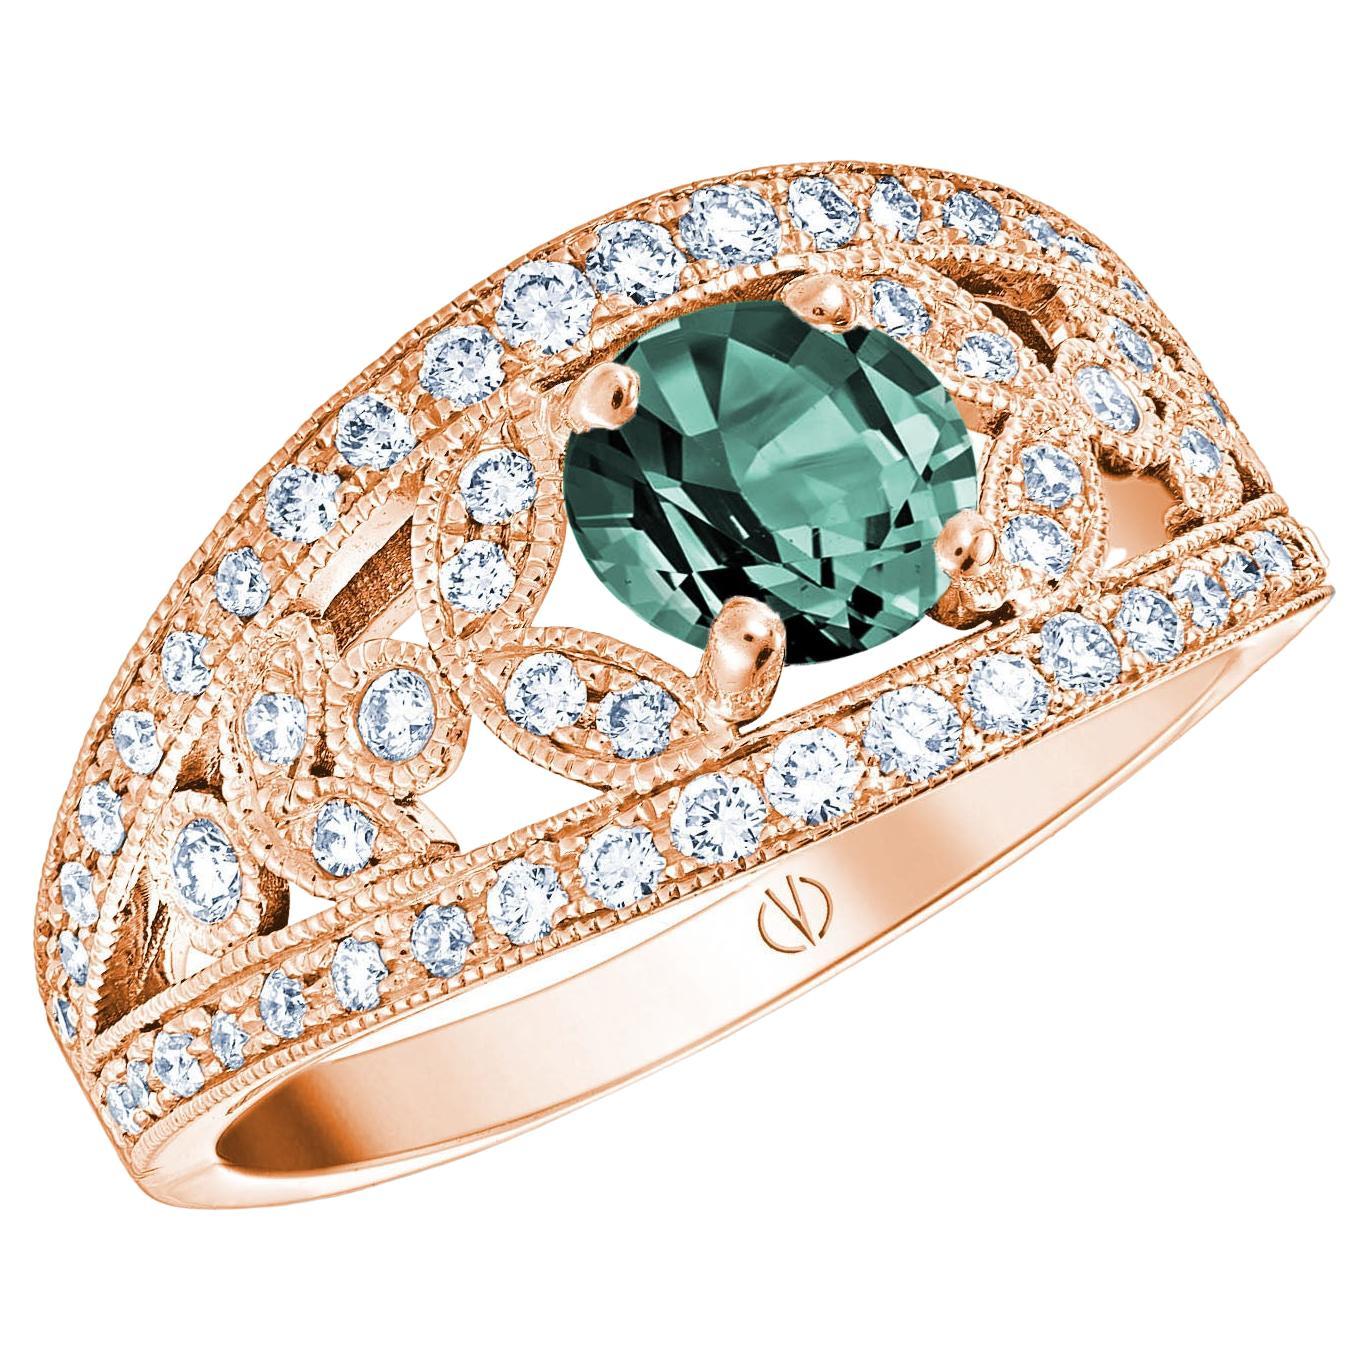 For Sale:  18k Rose Gold Laurel Leaf Design Blue Green Sapphire Ring Set with Diamonds